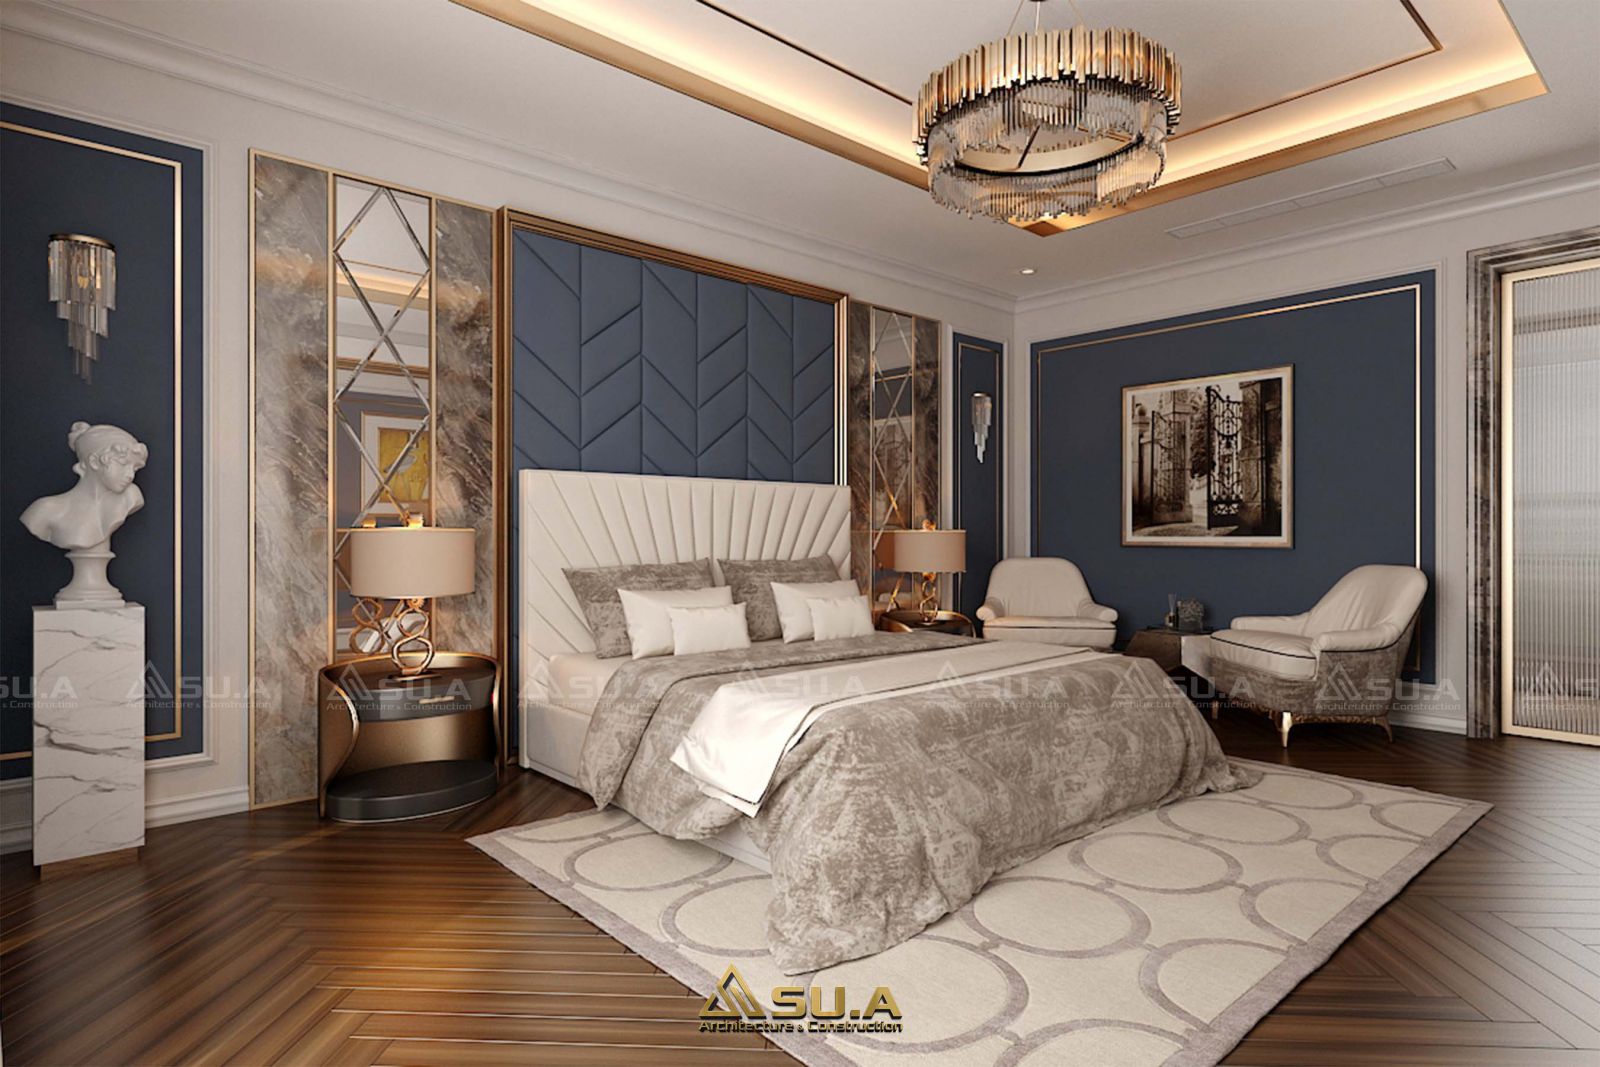 Mẫu thiết kế nội thất phòng ngủ đẳng cấp với tông màu xanh - trắng sang trọng, tinh tế với lót sàn gỗ sáng màu, giường ngủ, thảm trải sàn lông sang trọng, bàn trang điểm, các bức tranh gỗ treo tường đơn giản, tinh tế.